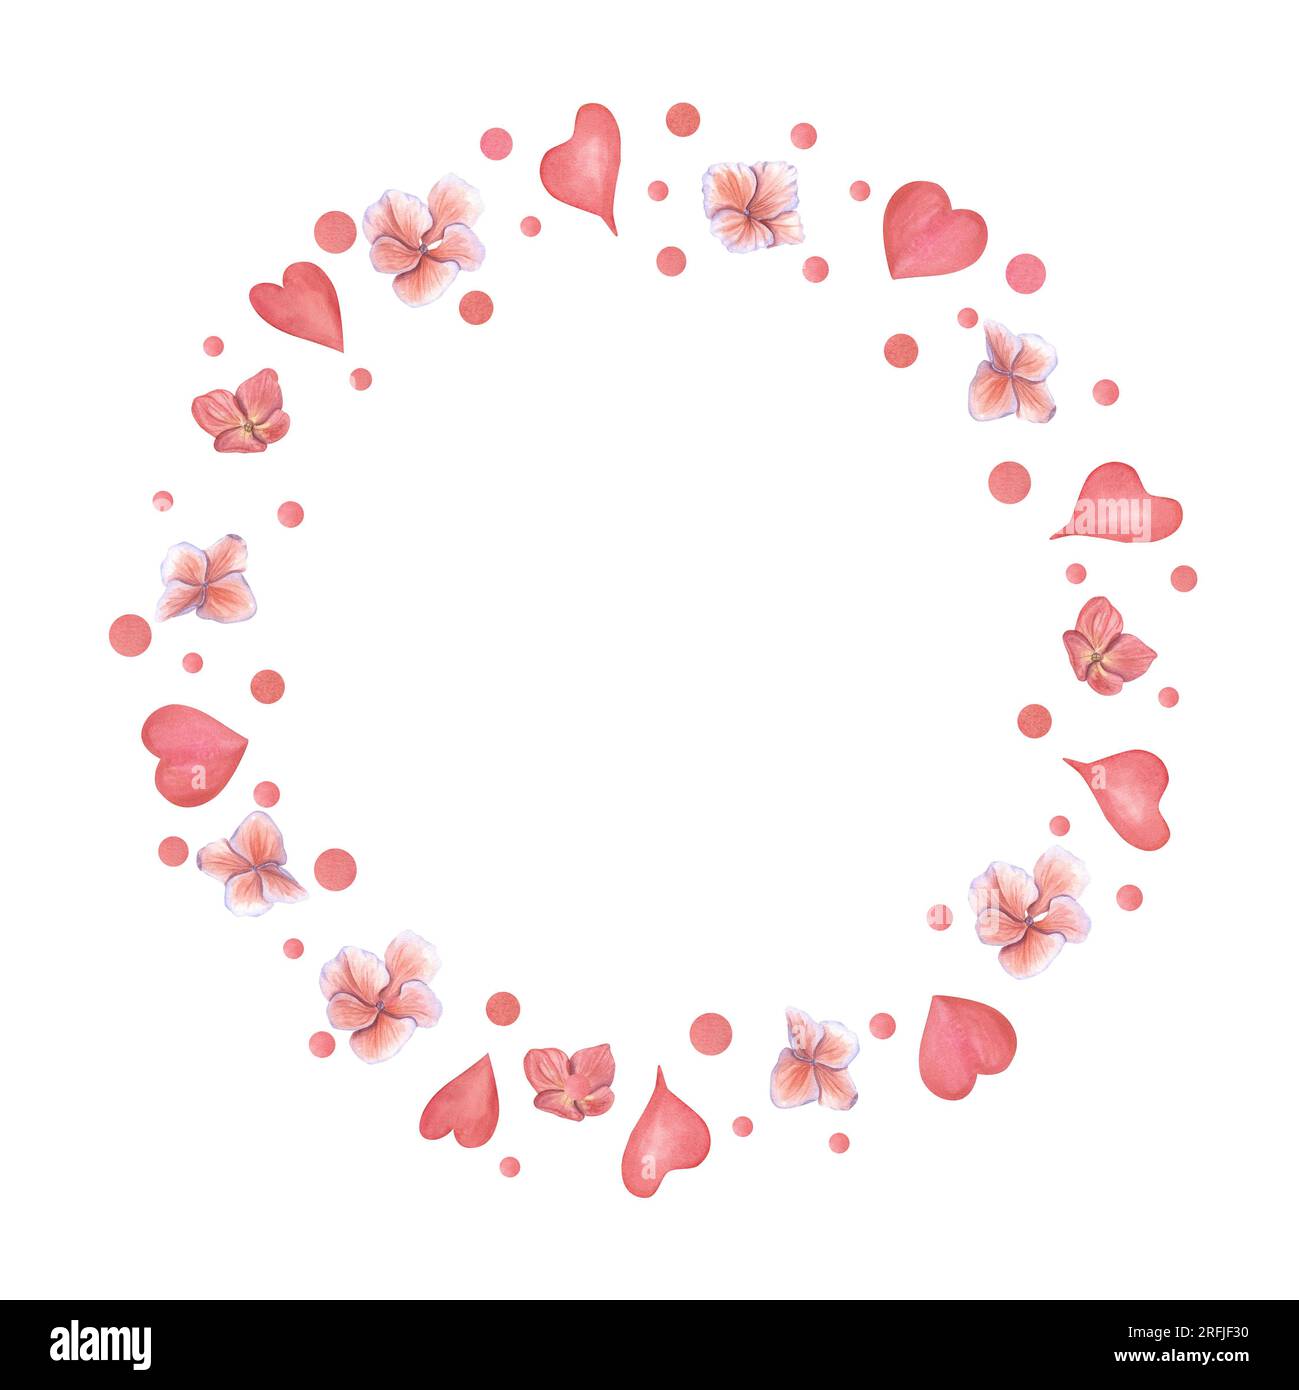 Der Kranz rosa Herzen und die Blüten der Hortensien. Platz für Text. Aquarelldarstellung isoliert auf Weiß. Für Save the Date, Valentinstag, Geburtstag und Stockfoto